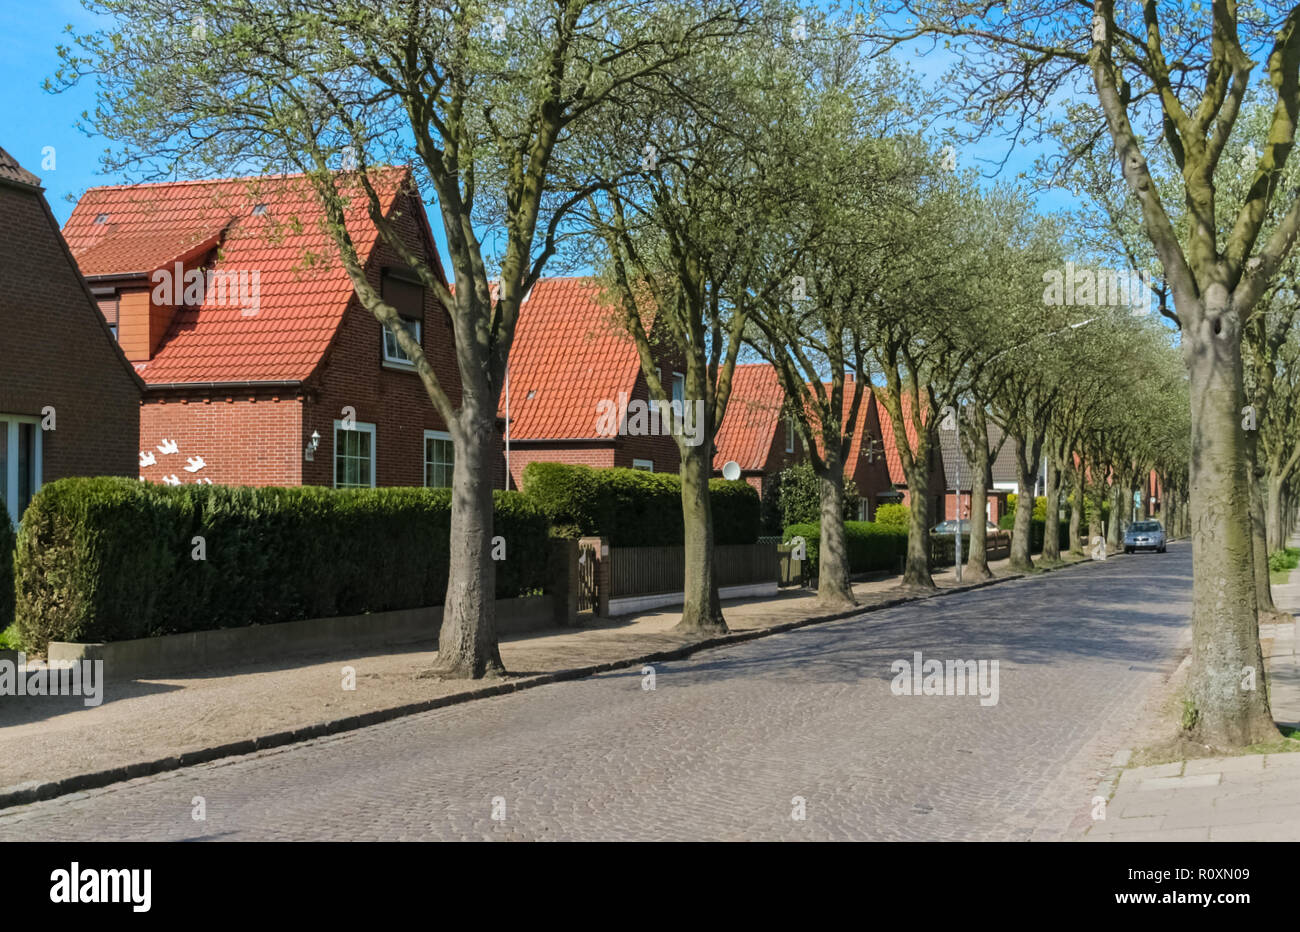 Eine typische Wohngegend mit ähnlich aussehenden roten Backsteinhäuser, rote Dachziegel und grünen Sträuchern an einem Baum Avenue mit einer gepflasterten Straße in ... Stockfoto